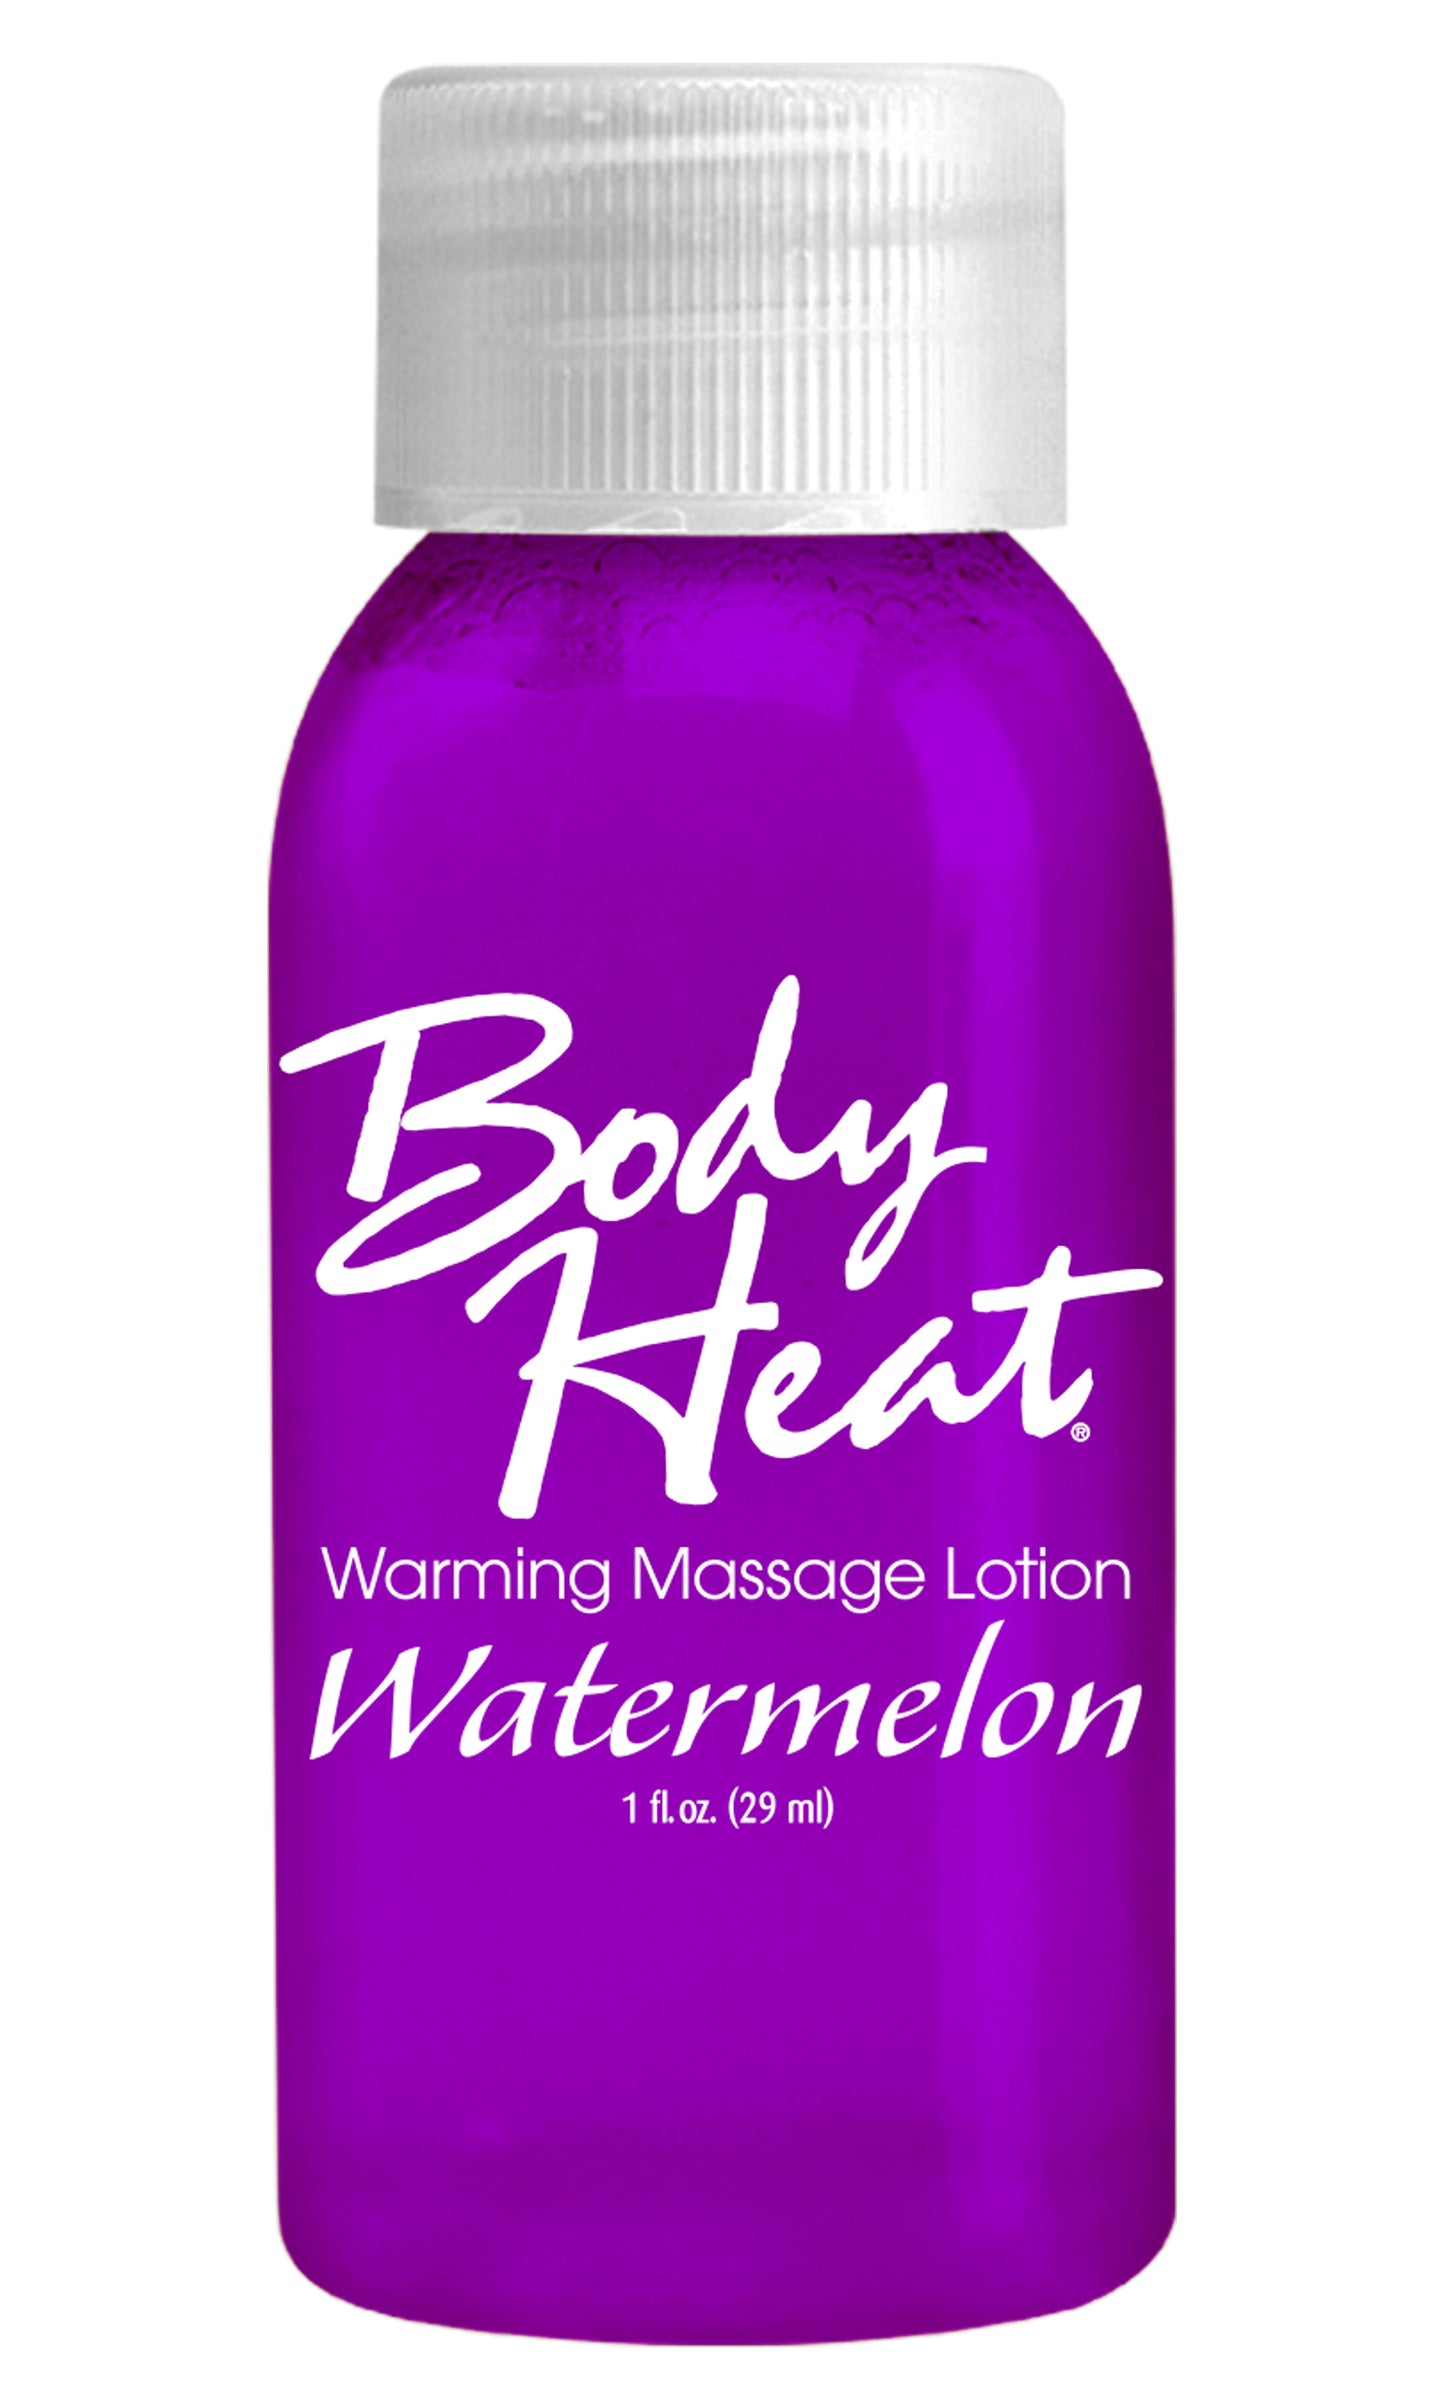 Body Heat Warming Massage Lotion Watermelon